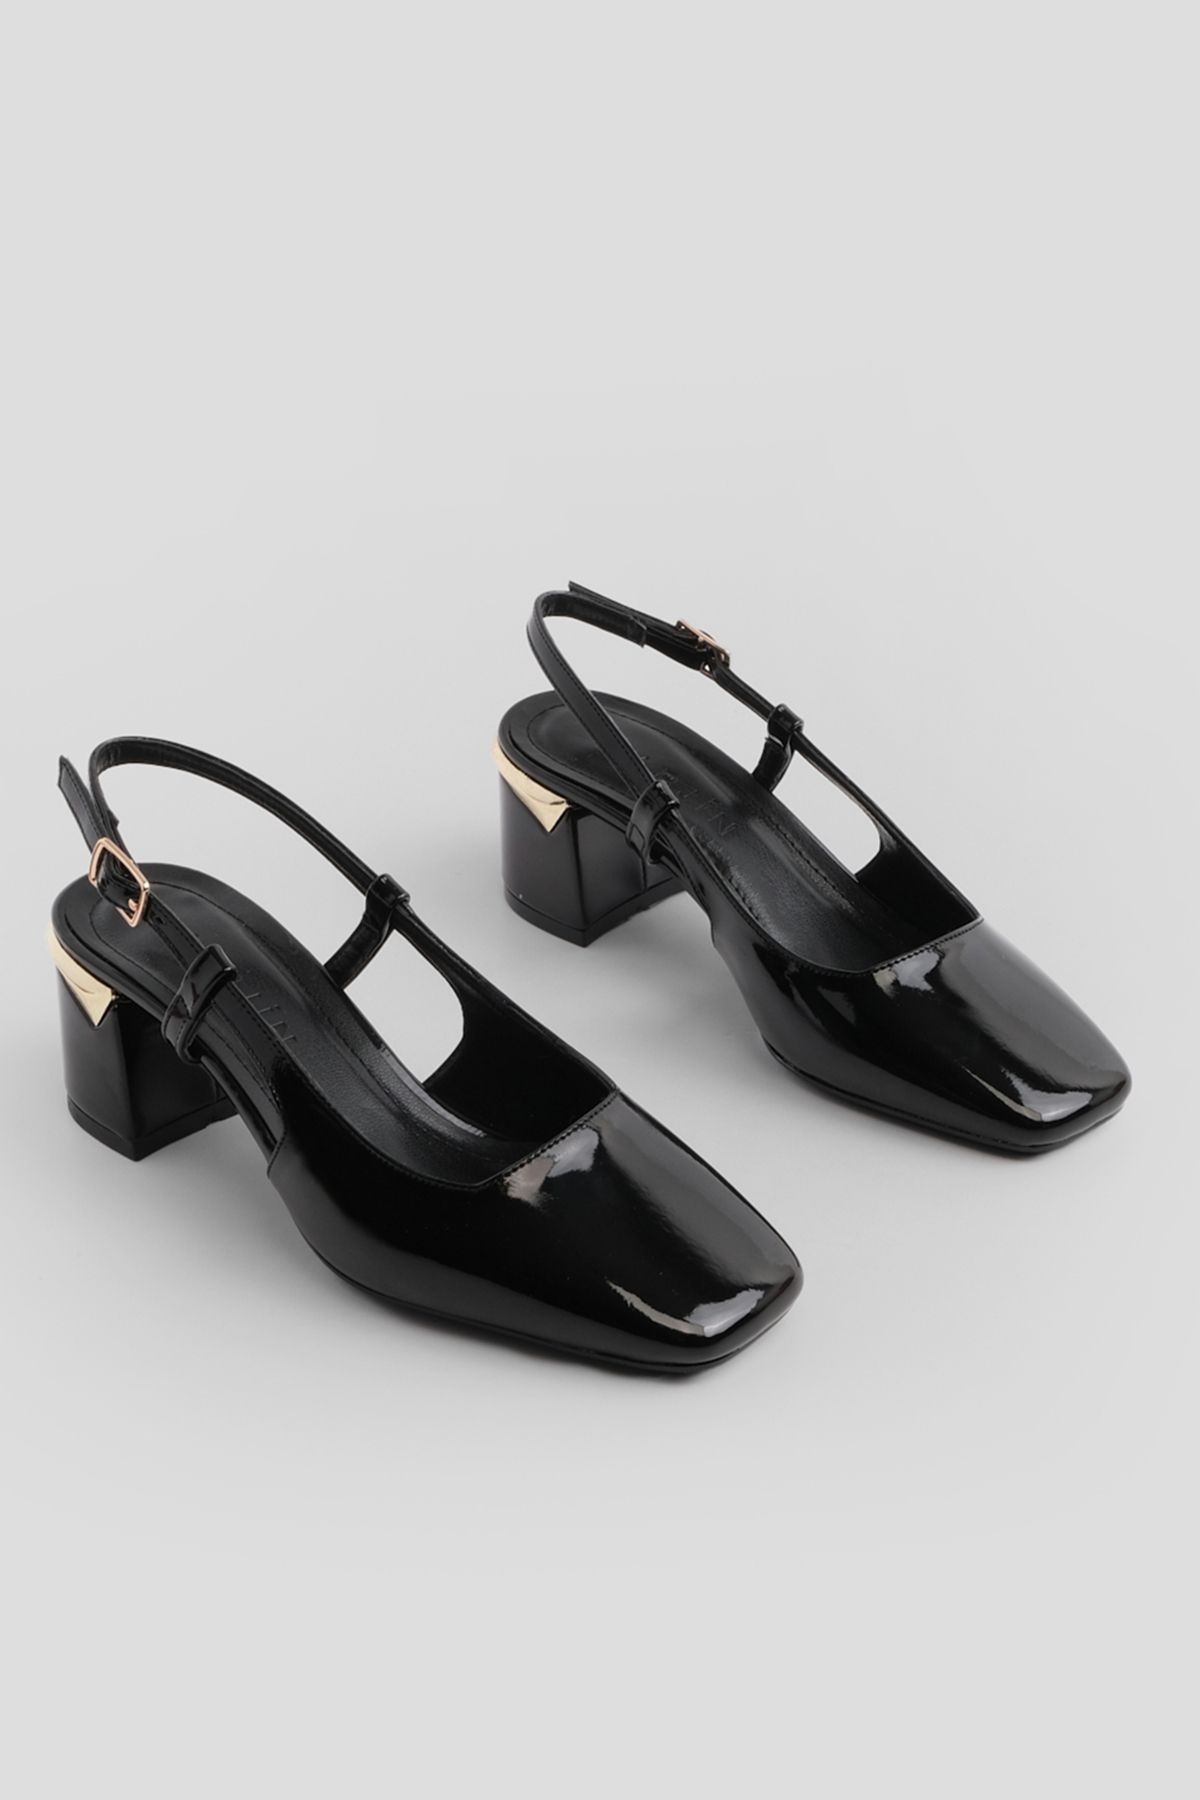 Marjin Kadın Kalın Topuk Arkası Açık Atkılı Klasik Topuklu Ayakkabı Likay Siyah Rugan